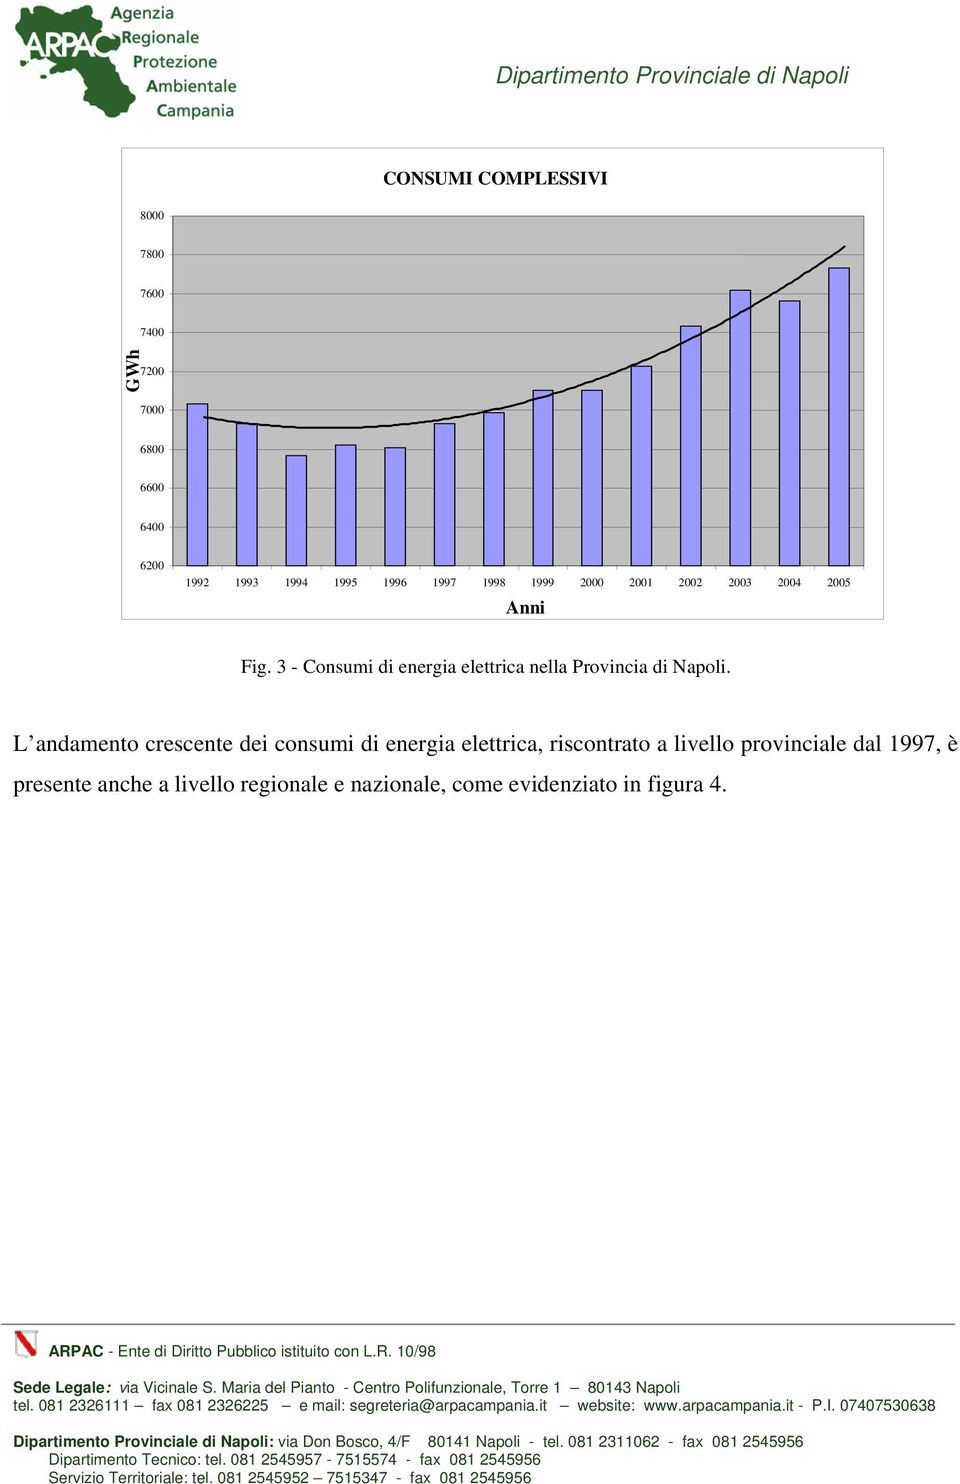 L andamento crescente dei consumi di energia elettrica, riscontrato a livello provinciale dal 1997, è presente anche a livello regionale e nazionale, come evidenziato in figura 4.